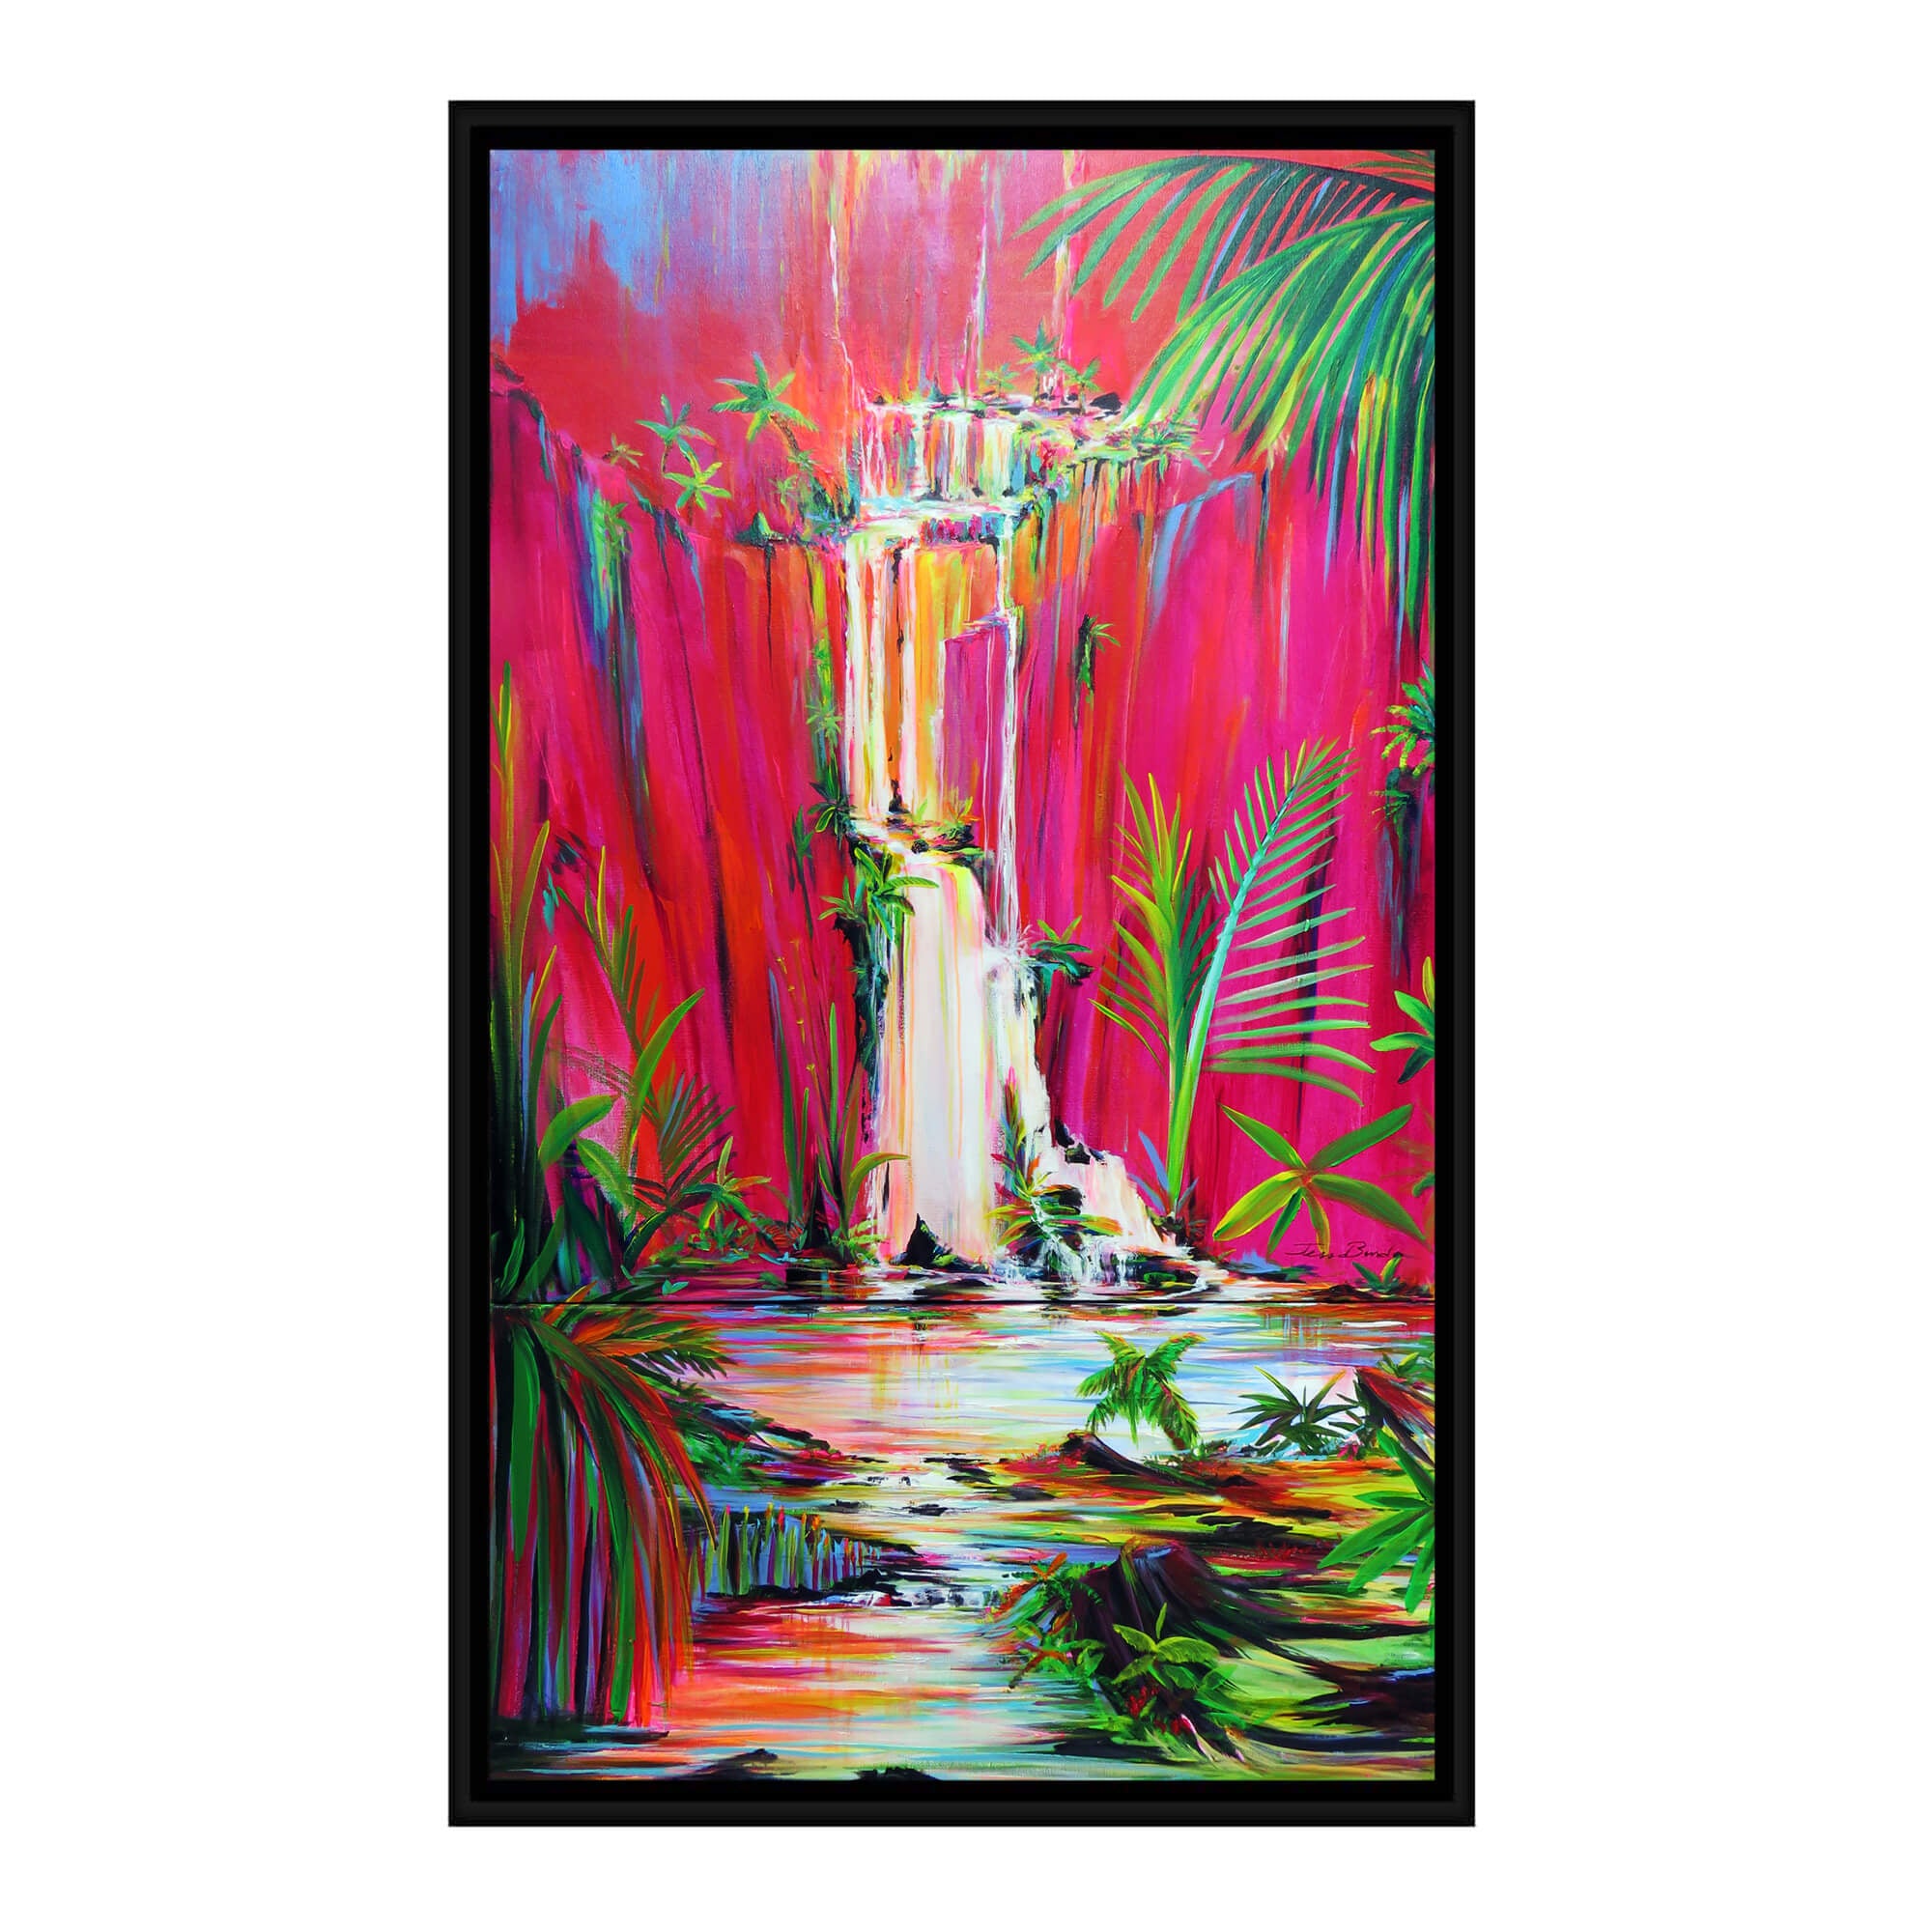 A pink hued waterfall by Hawaii artist Jess Burda